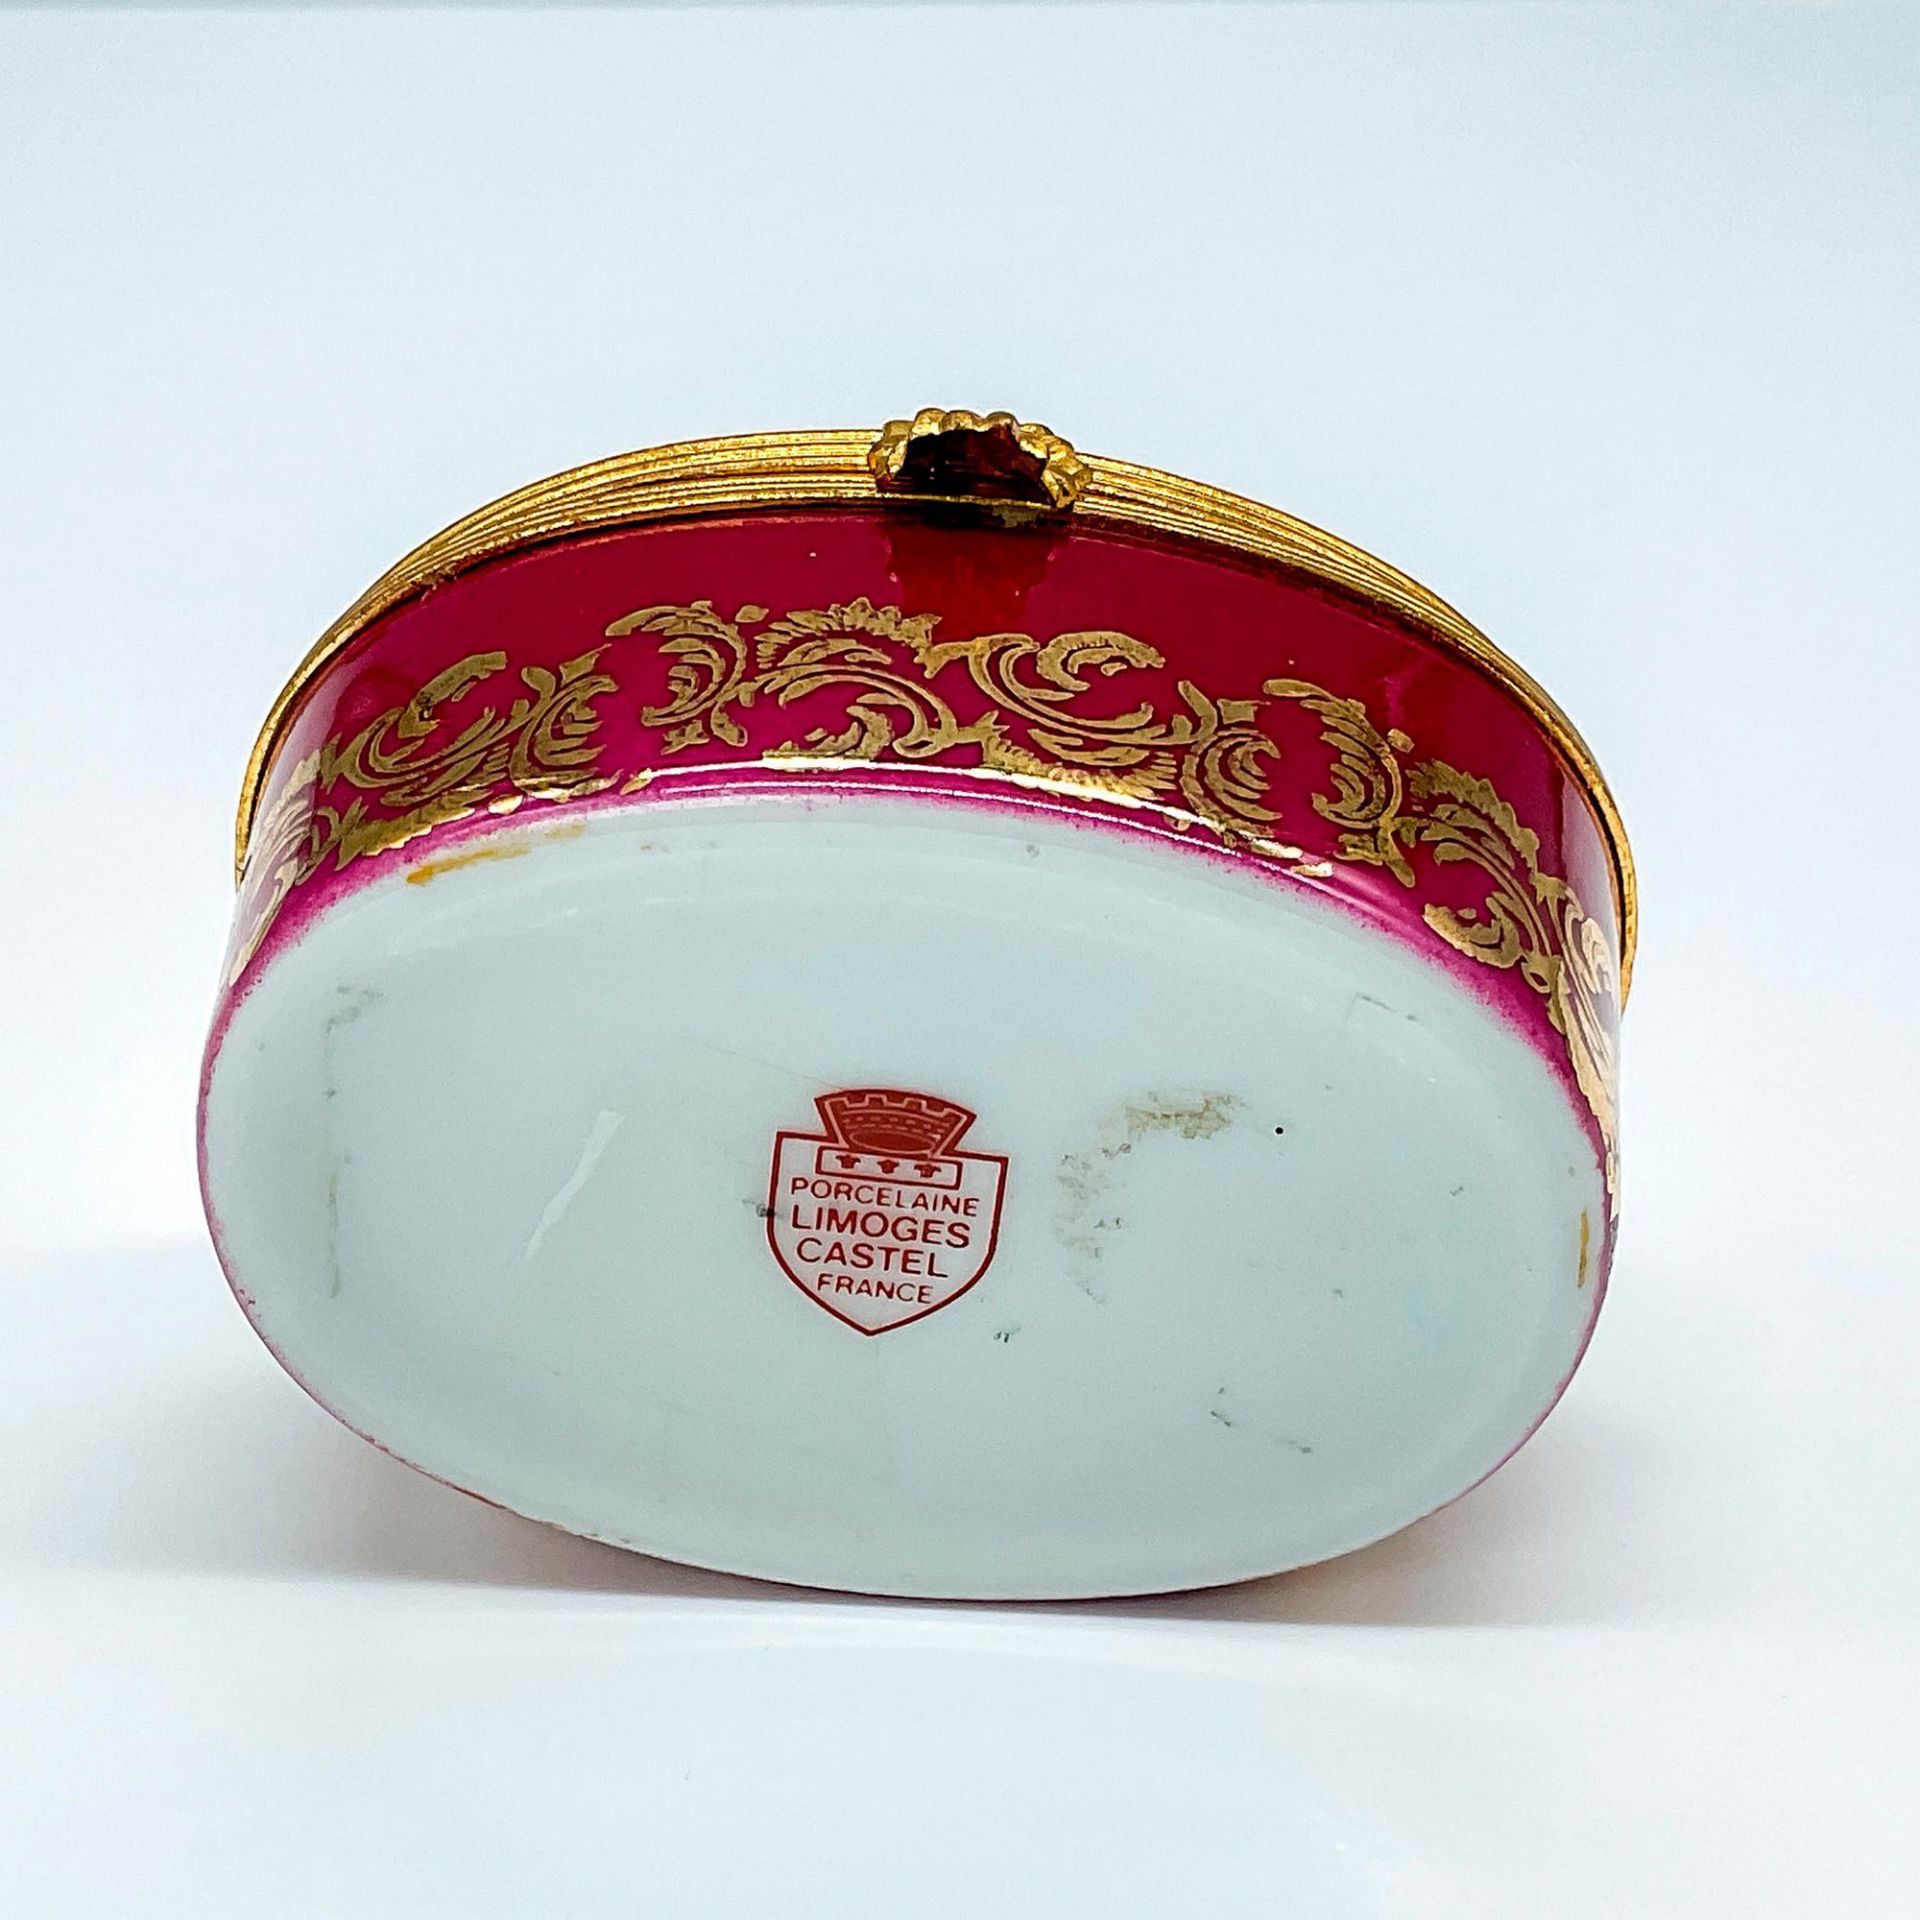 Oval Castel Limoges Porcelain Box - Image 3 of 3